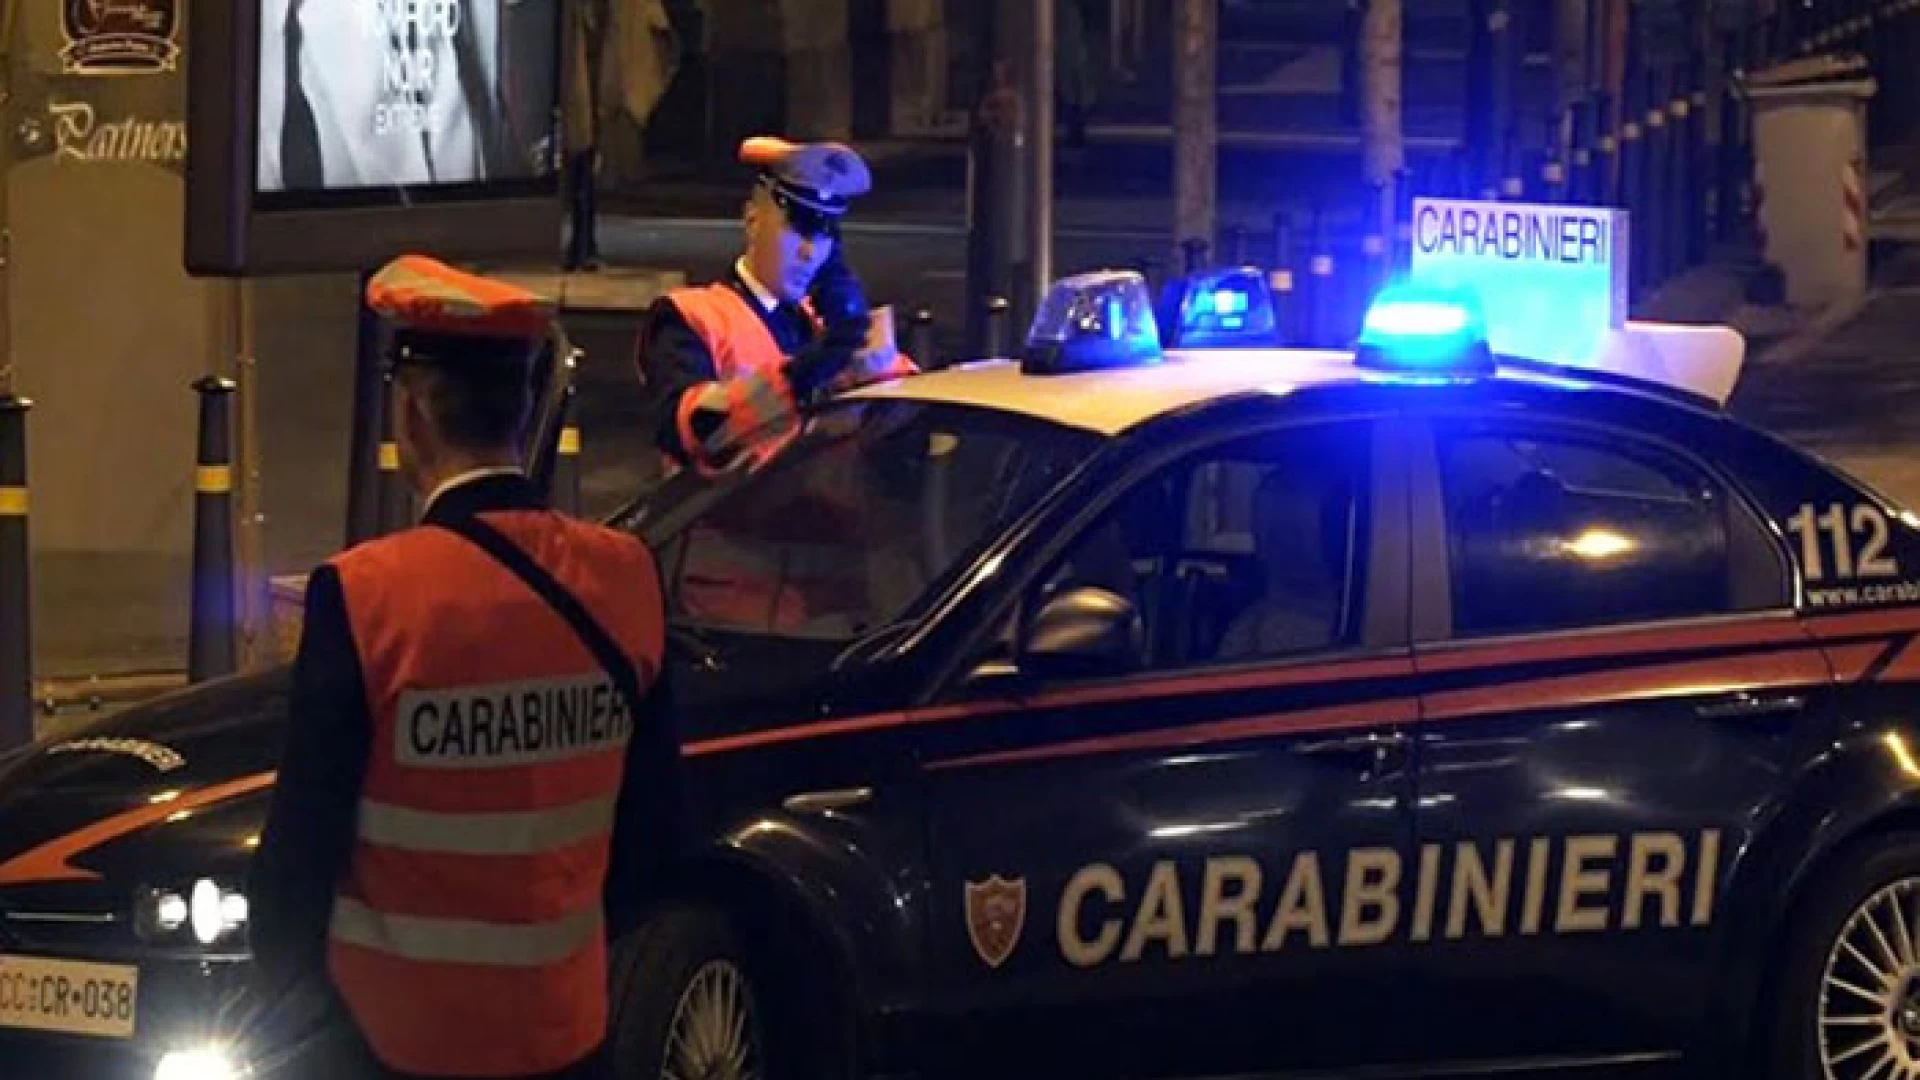 Isernia: Carabinieri in azione durante il week-end, controlli in tutta la provincia, eseguite numerose perquisizioni e accertate violazioni in materia di sicurezza stradale.